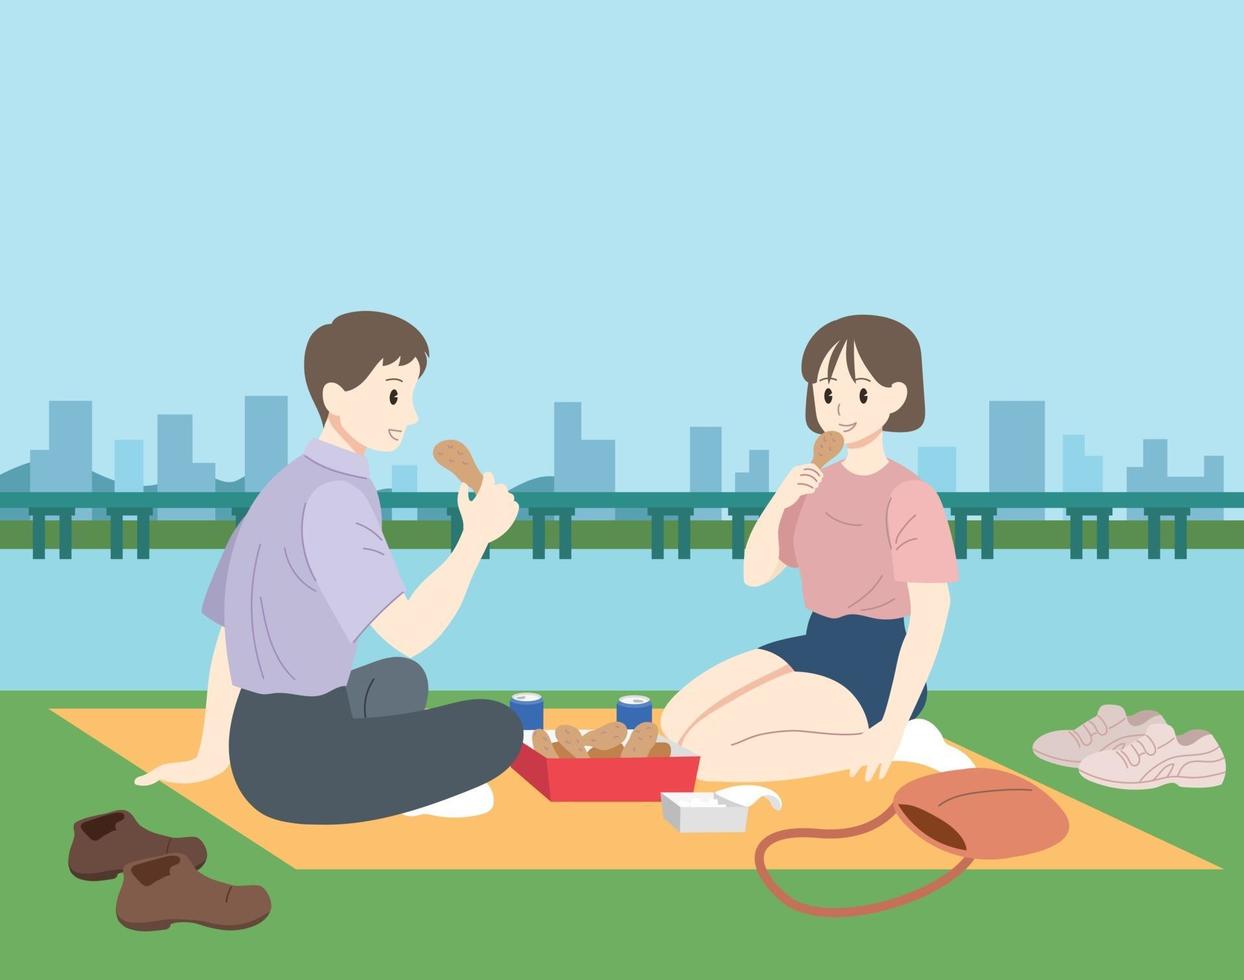 la coppia sta facendo un picnic in riva al fiume. illustrazioni di disegno vettoriale stile disegnato a mano.